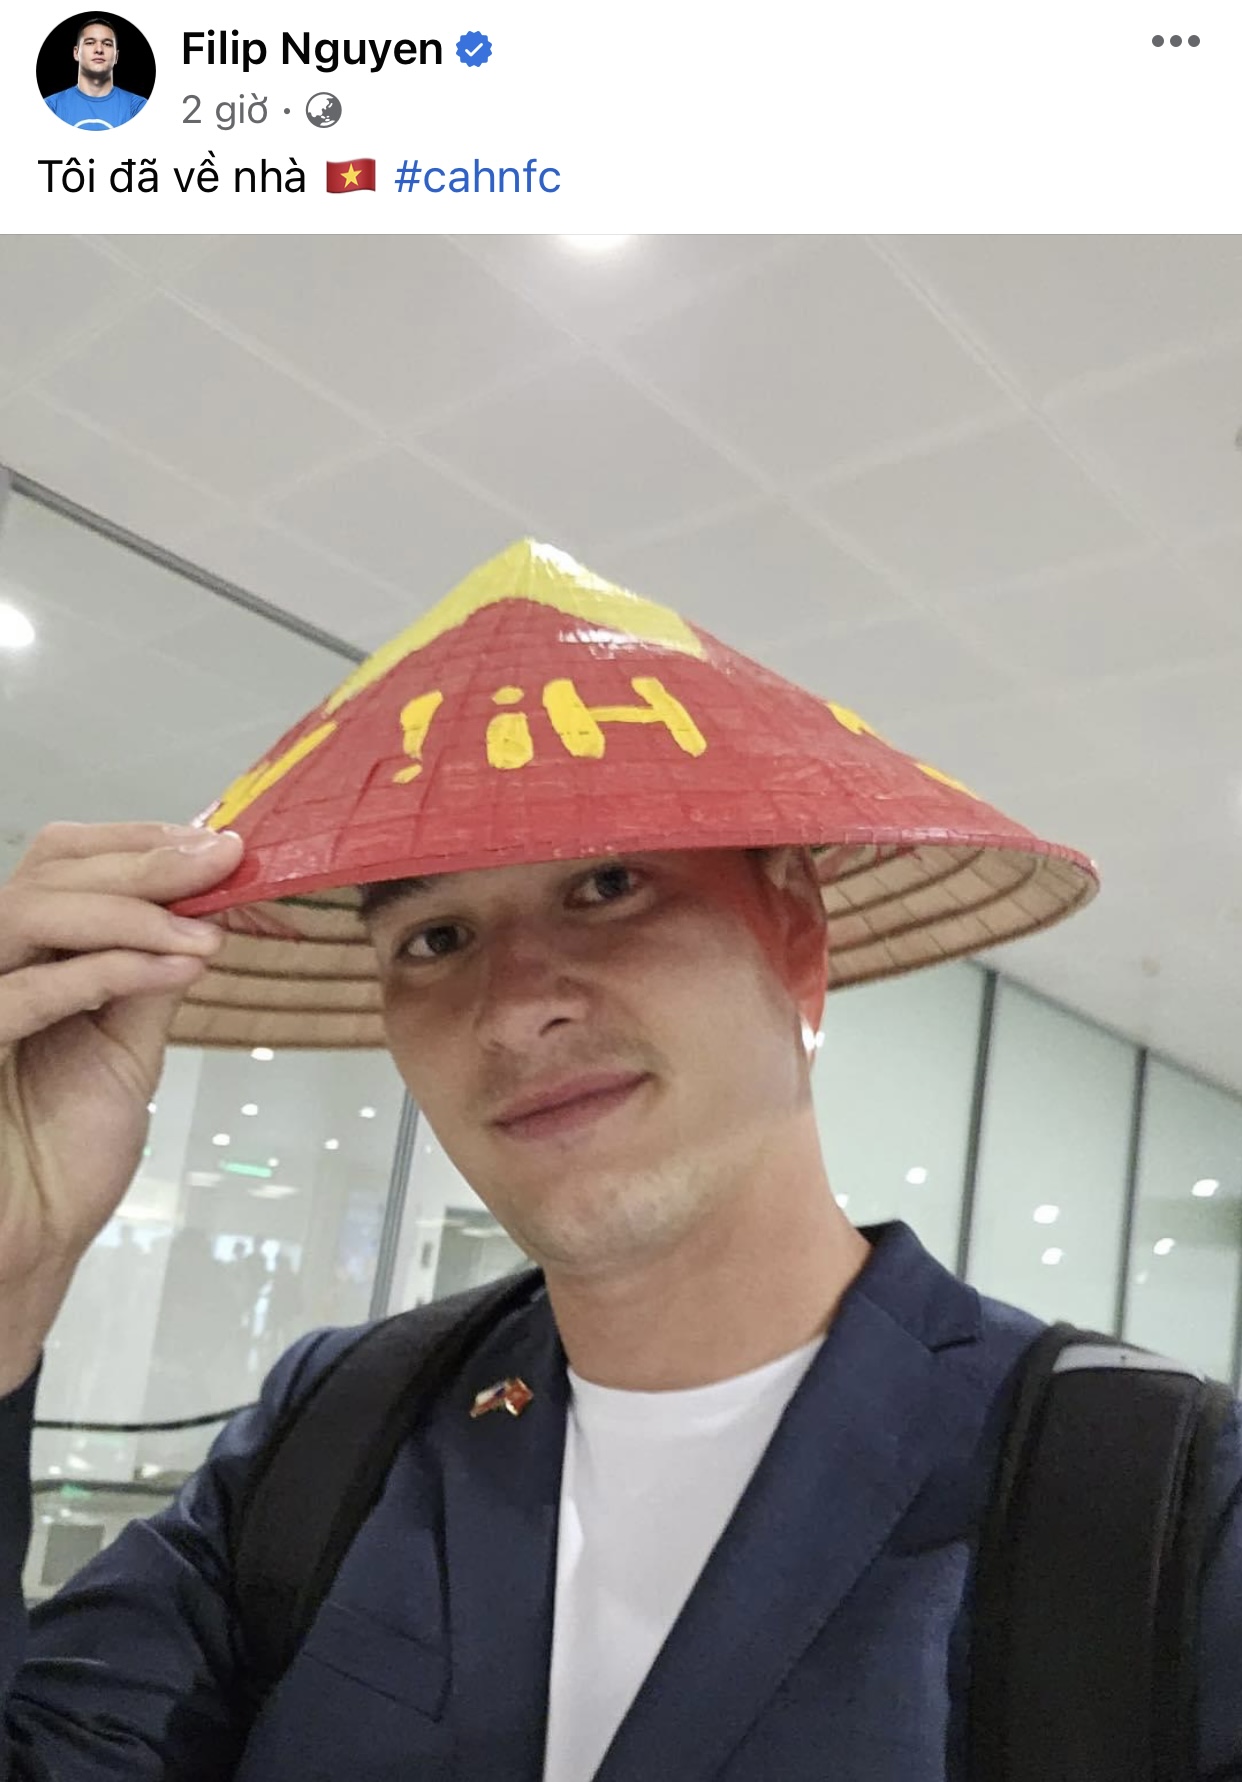 Filip Nguyễn xuất hiện ở sân bay Nội Bài, thích thú với chiếc nón lá - Ảnh 1.